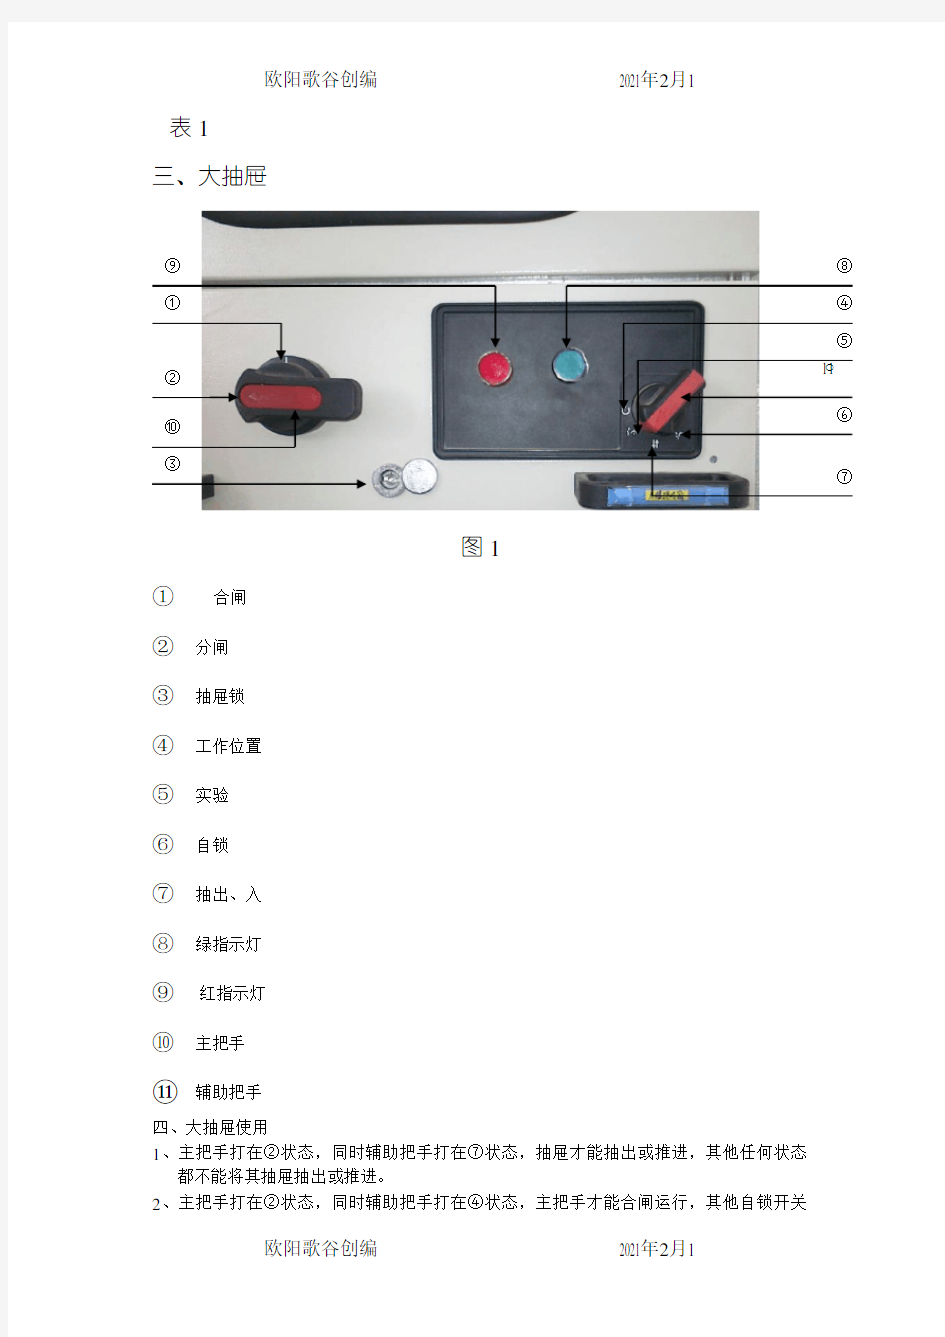 低压配电柜的抽屉使用说明书之欧阳歌谷创作